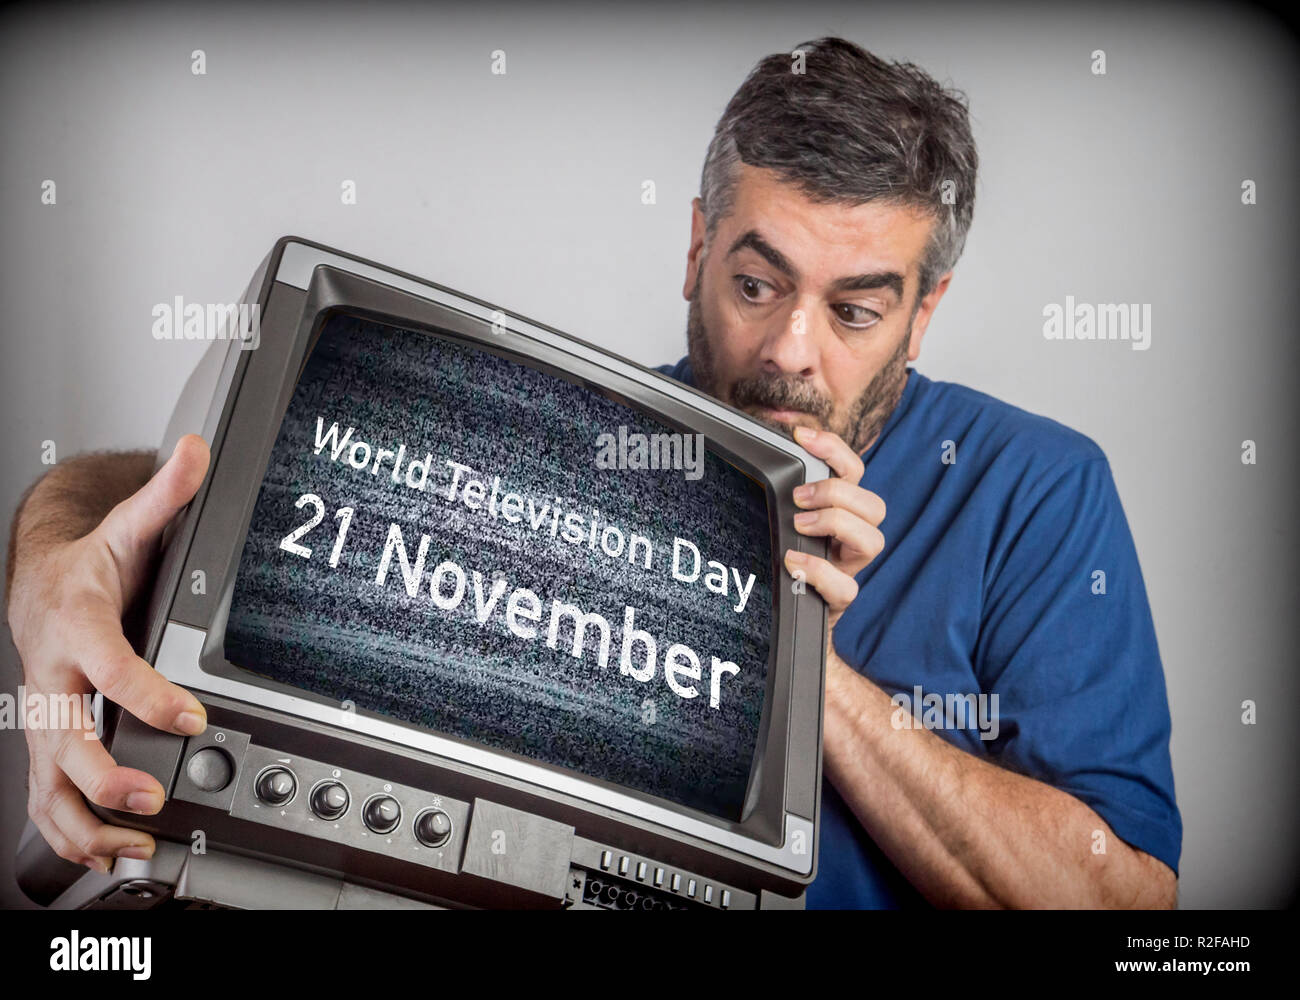 Hombre de mediana edad tiene un TV con el Día Mundial de la Televisión 21 de noviembre de pantalla, imagen conceptual Foto de stock